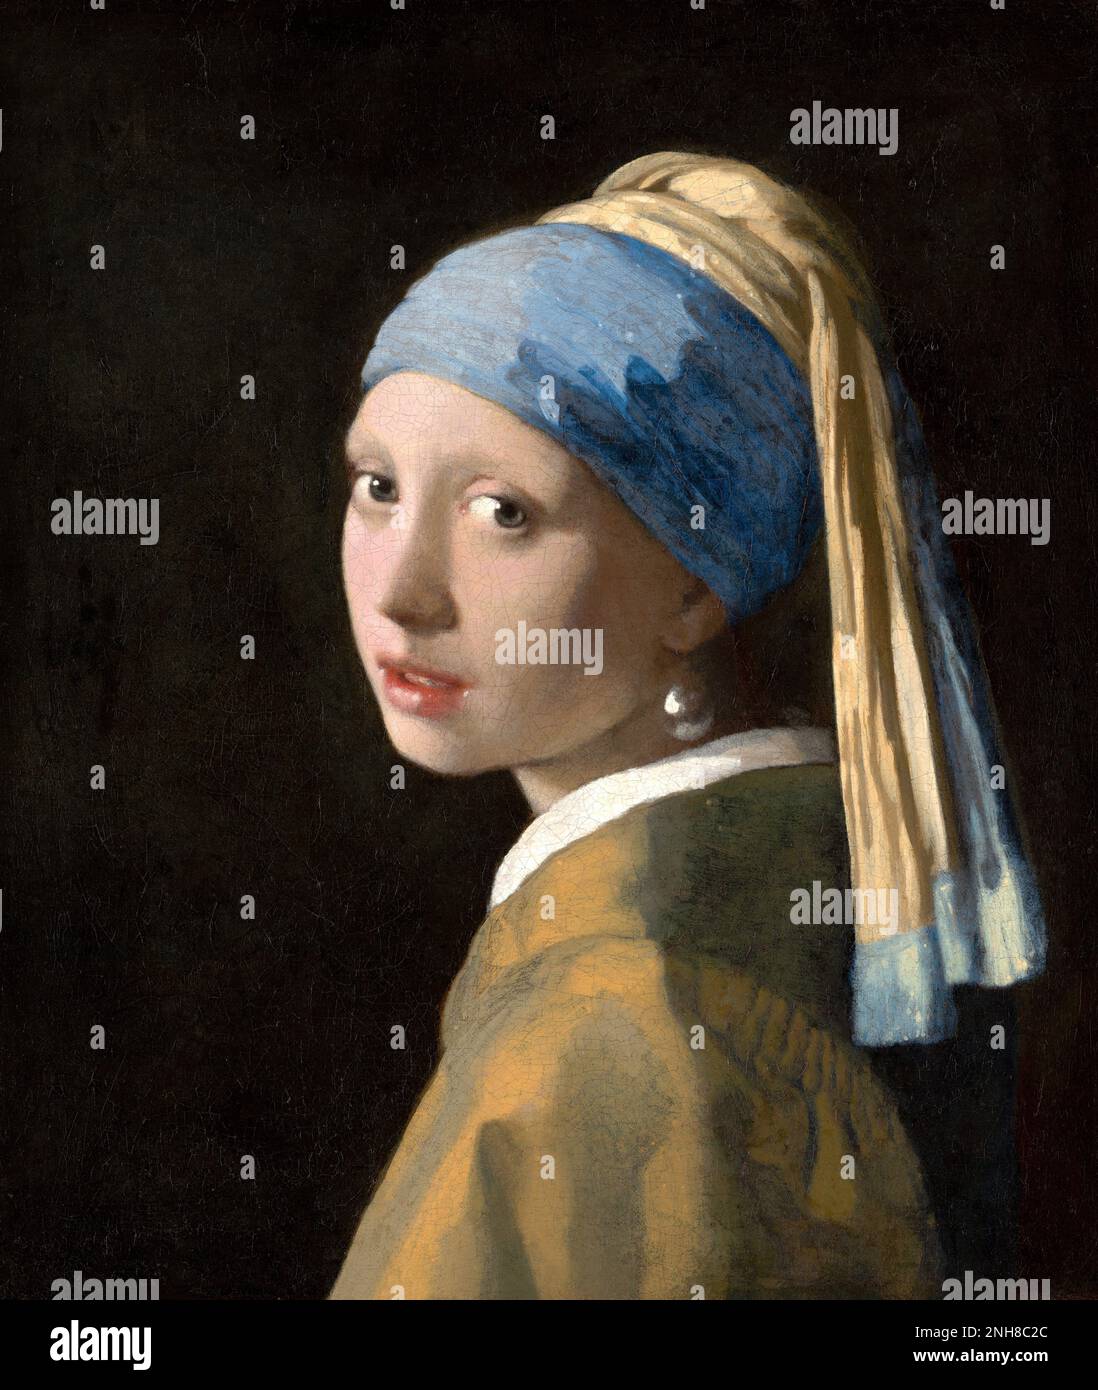 Das Mädchen mit einem Perlenohrring ist ein Ölgemälde des niederländischen Malers Johannes Vermeer aus dem Goldenen Zeitalter, datiert auf c. 1665. Im Laufe der Jahrhunderte wurde es unter verschiedenen Namen bekannt, und gegen Ende des 20. Jahrhunderts wurde es bekannt durch seinen heutigen Titel, nachdem das Mädchen, das dort dargestellt wurde, einen Ohrring getragen hatte. Stockfoto